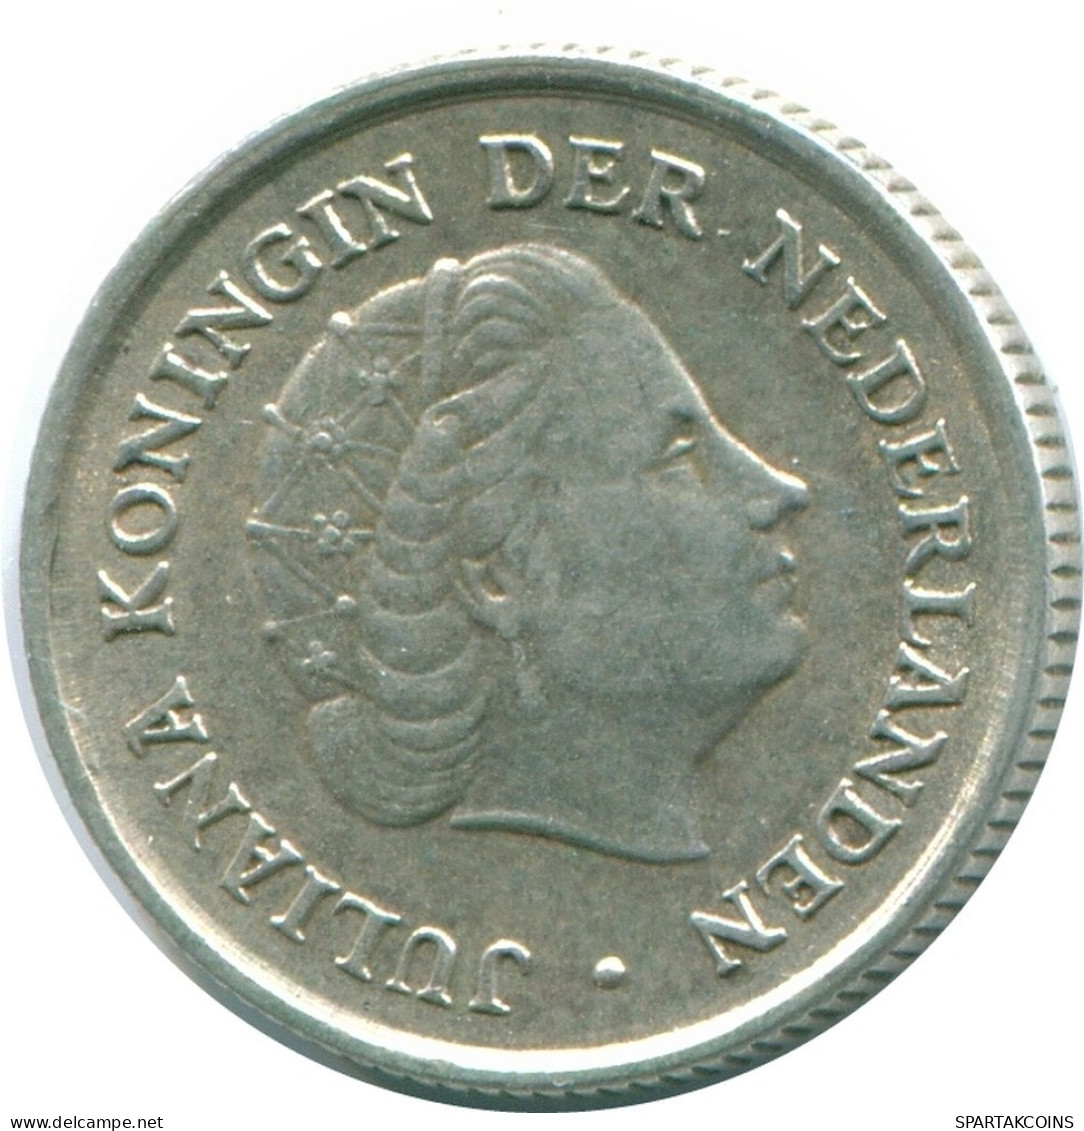 1/10 GULDEN 1963 NIEDERLÄNDISCHE ANTILLEN SILBER Koloniale Münze #NL12516.3.D.A - Antilles Néerlandaises